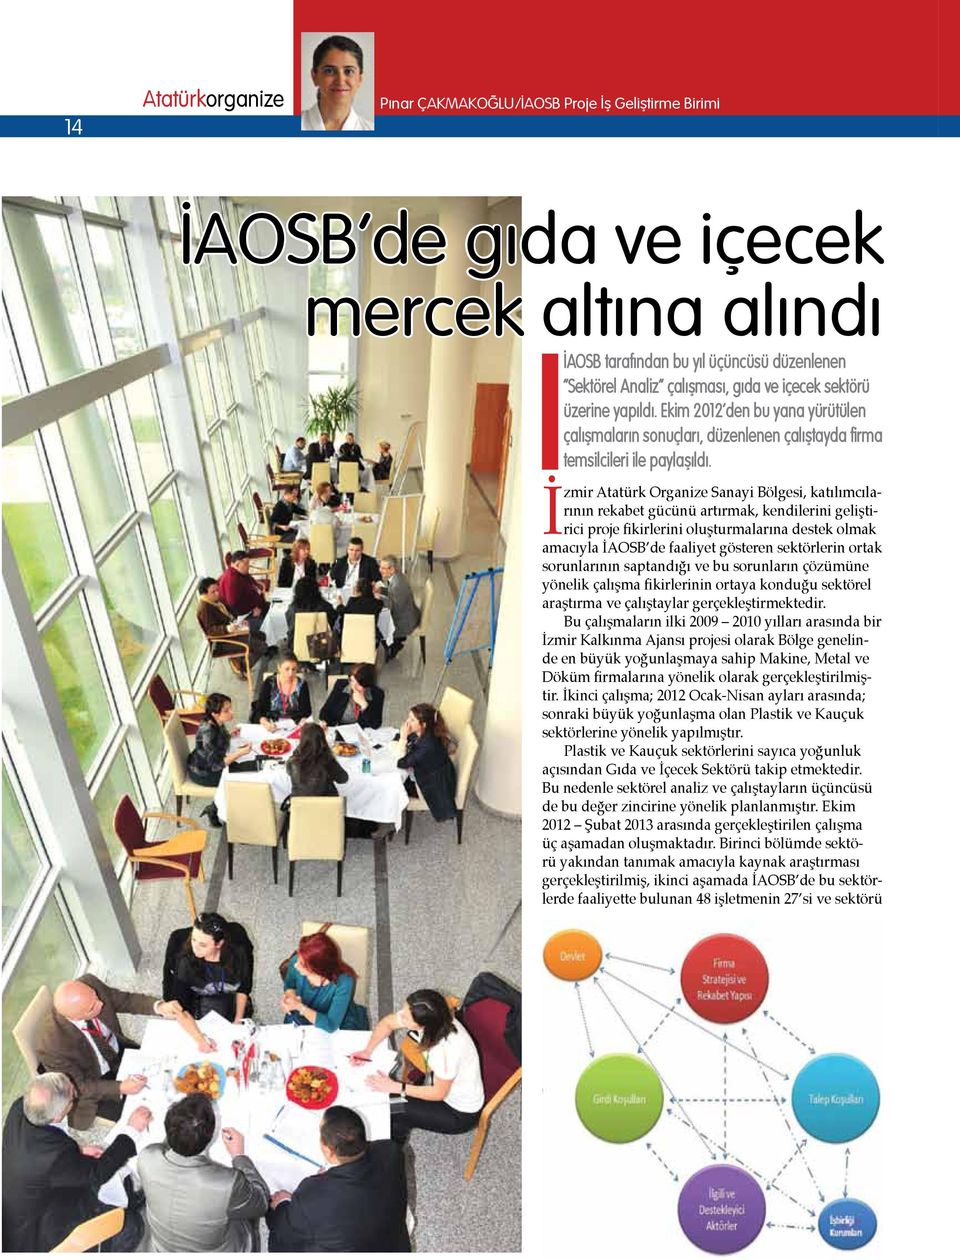 İzmir Atatürk Organize Sanayi Bölgesi, katılımcılarının rekabet gücünü artırmak, kendilerini geliştirici proje fikirlerini oluşturmalarına destek olmak amacıyla İAOSB de faaliyet gösteren sektörlerin